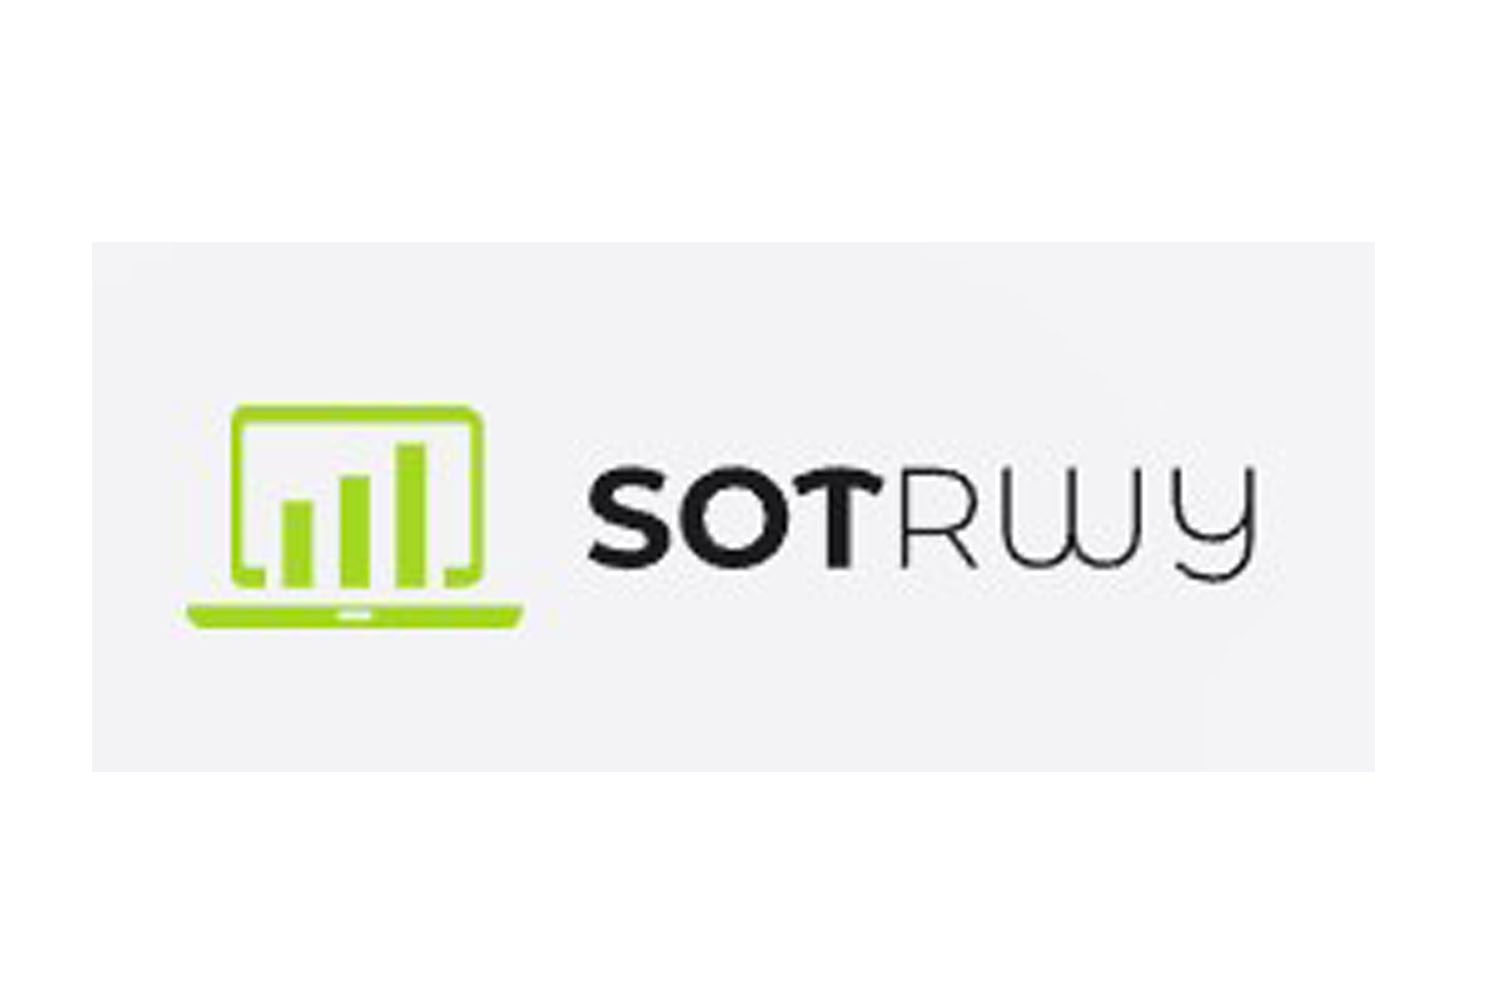 SOT-rwy: какие отзывы о компании пишут клиенты